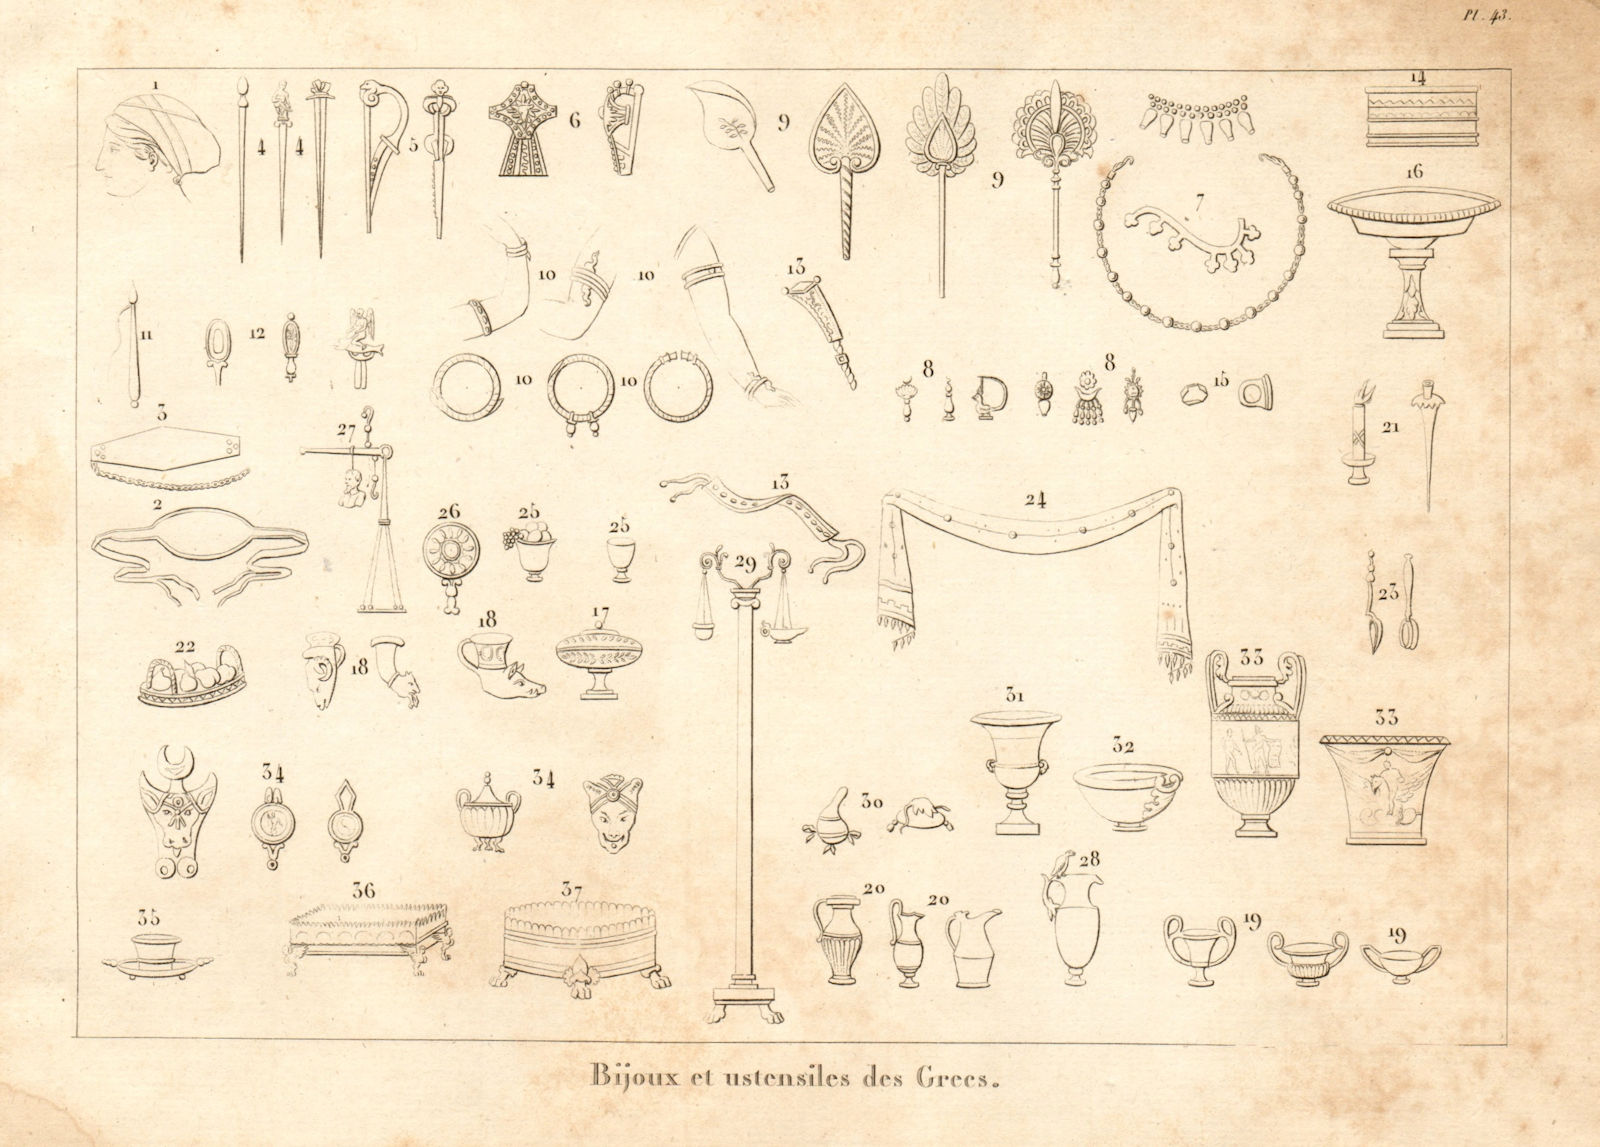 ANCIENT GREECE. Jewellery & utensils. "Bijoux et ustensiles des Grecs" 1832